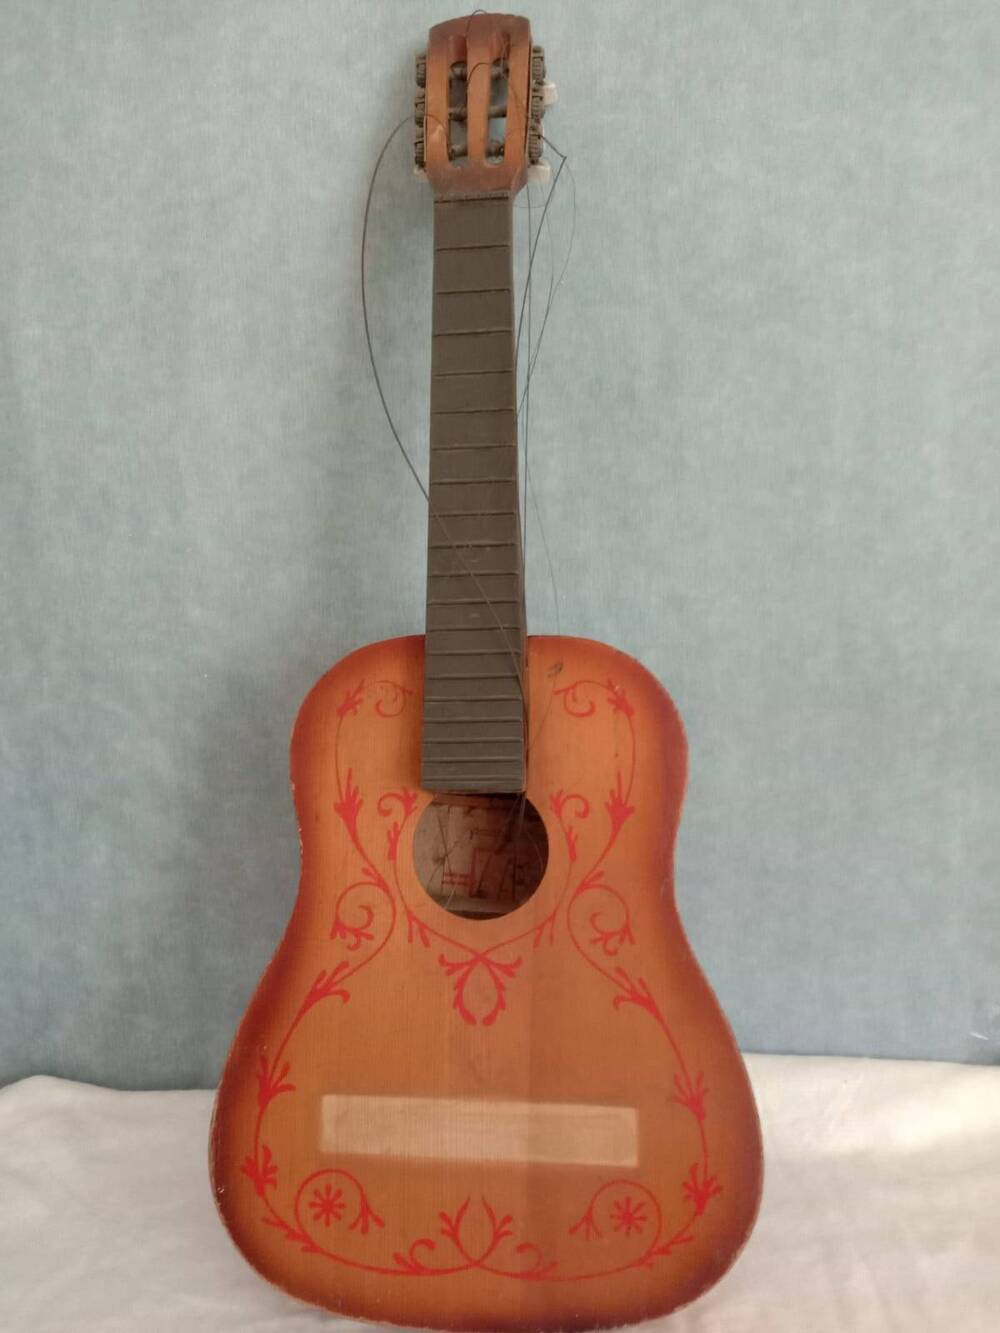 Шестиструнная гитара светло-коричневого цвета.